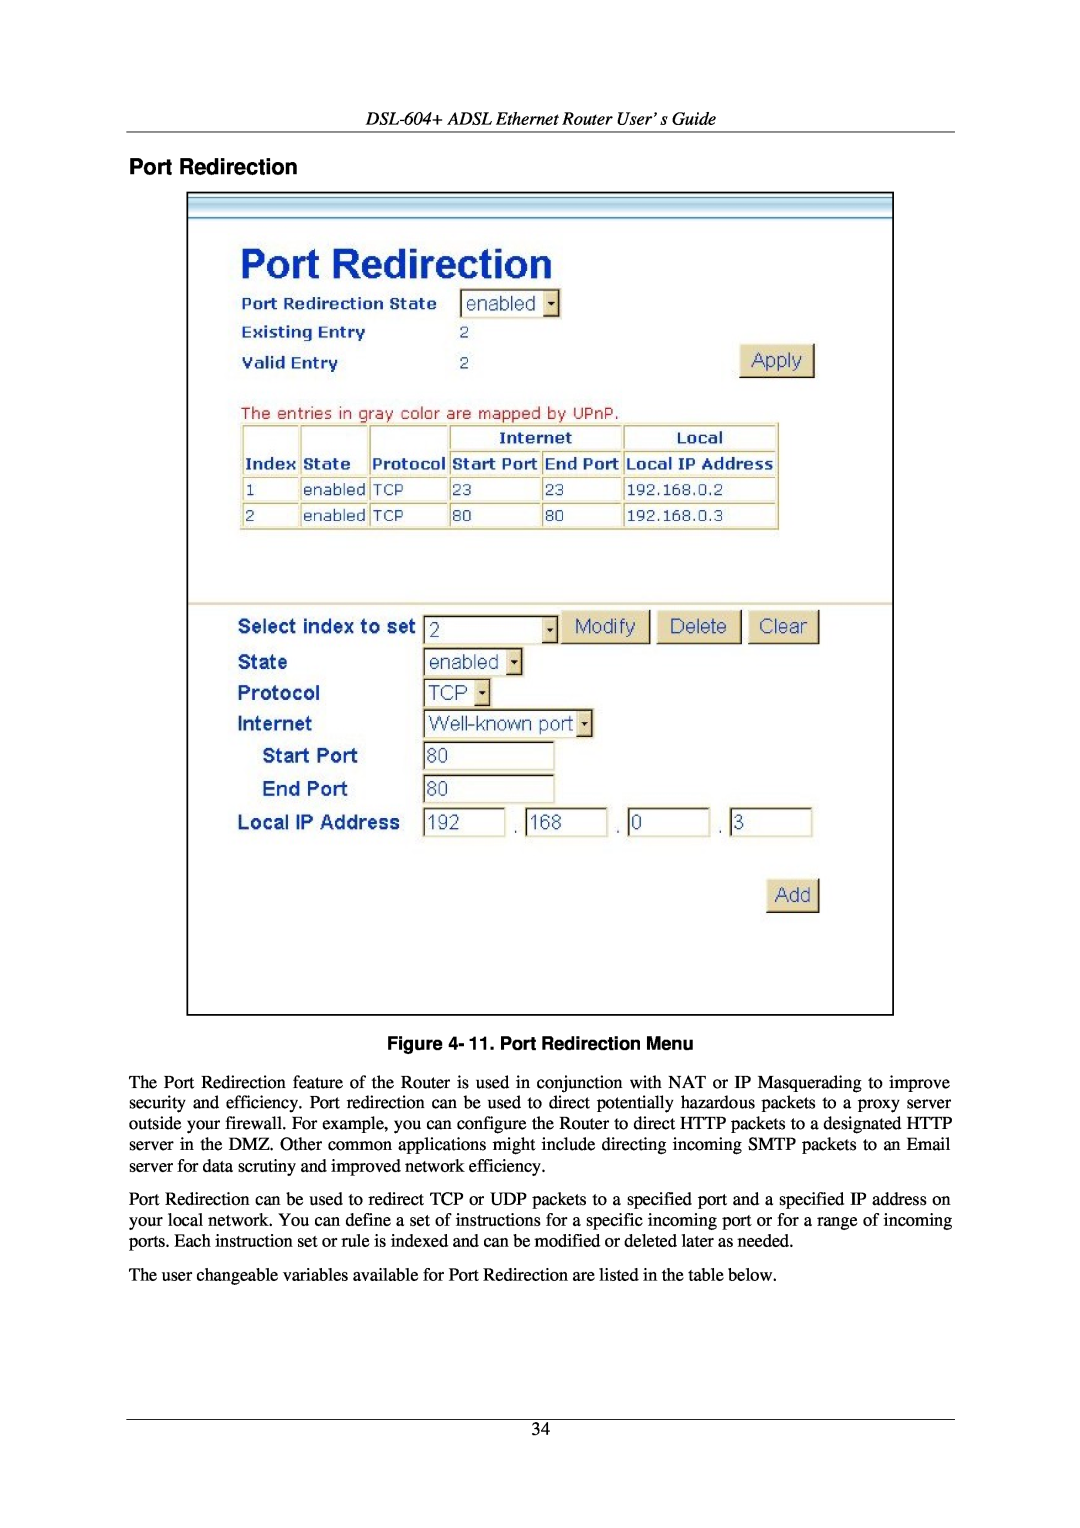 D-Link manual DSL-604+ ADSL Ethernet Router User’s Guide, 11. Port Redirection Menu 